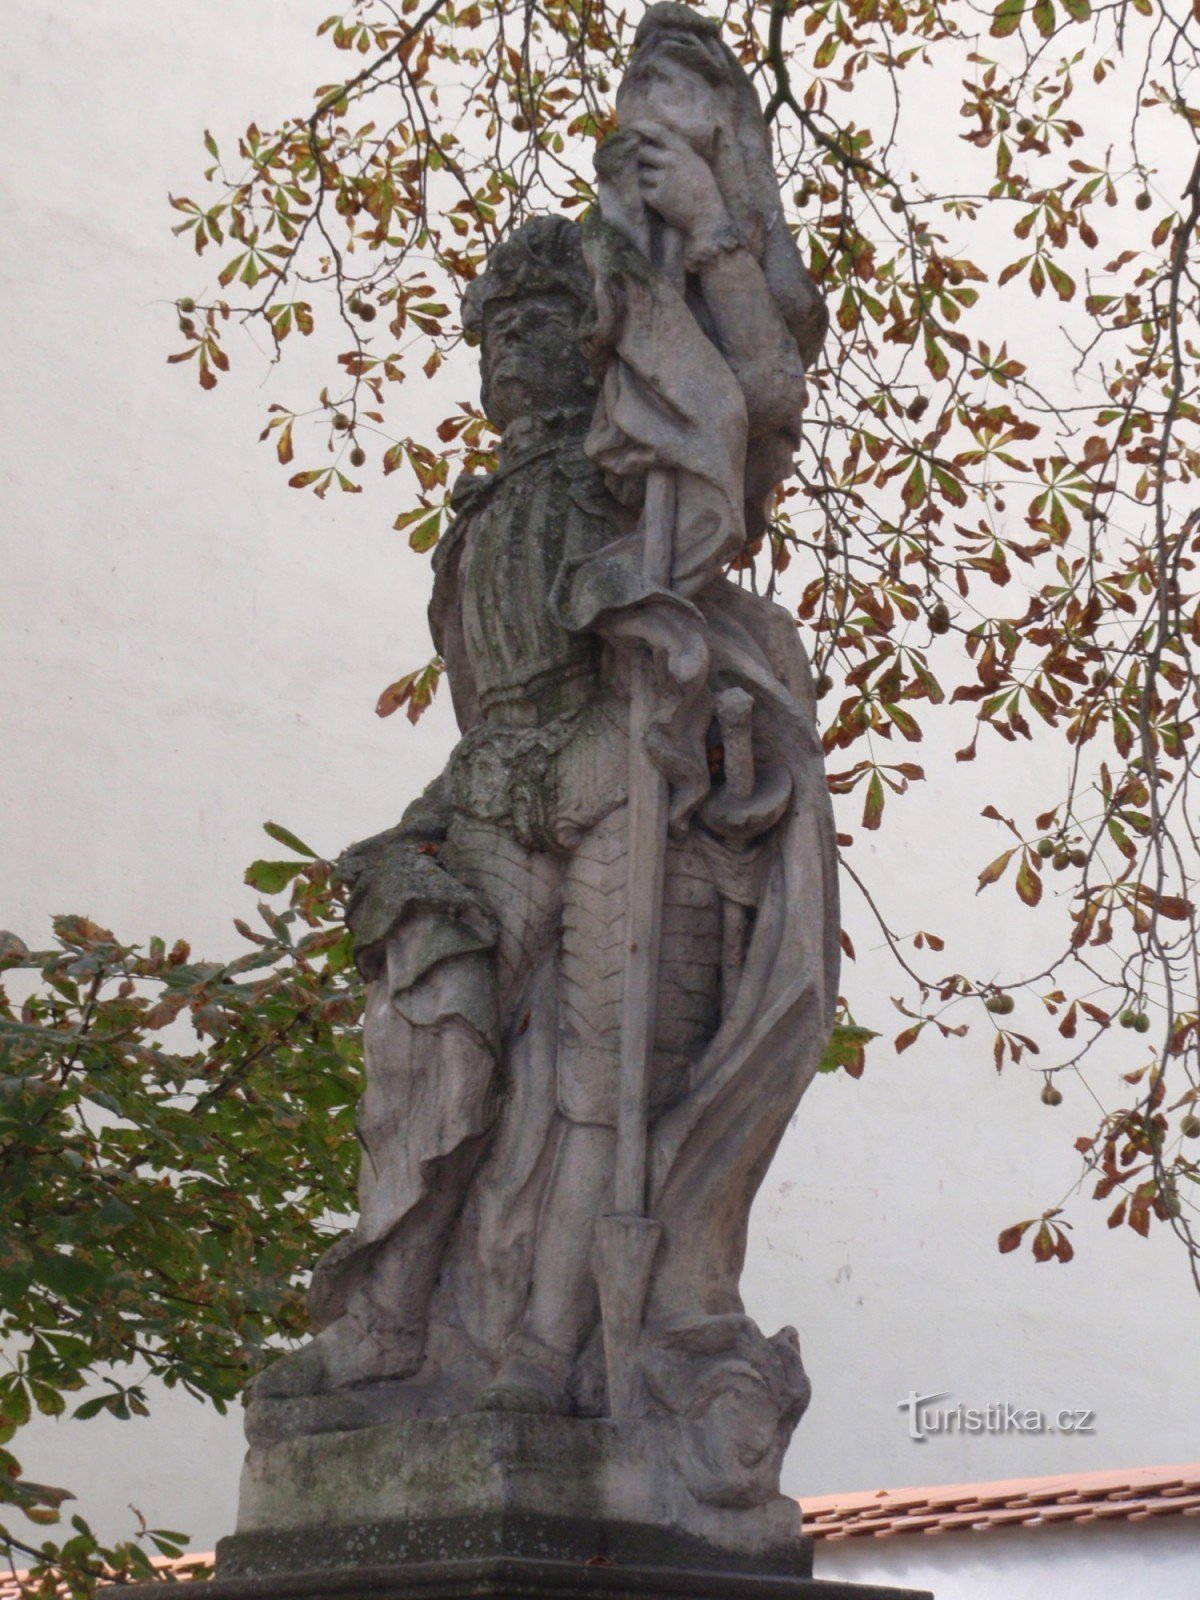 Άγαλμα του Αγ. Florian στο Třebíč